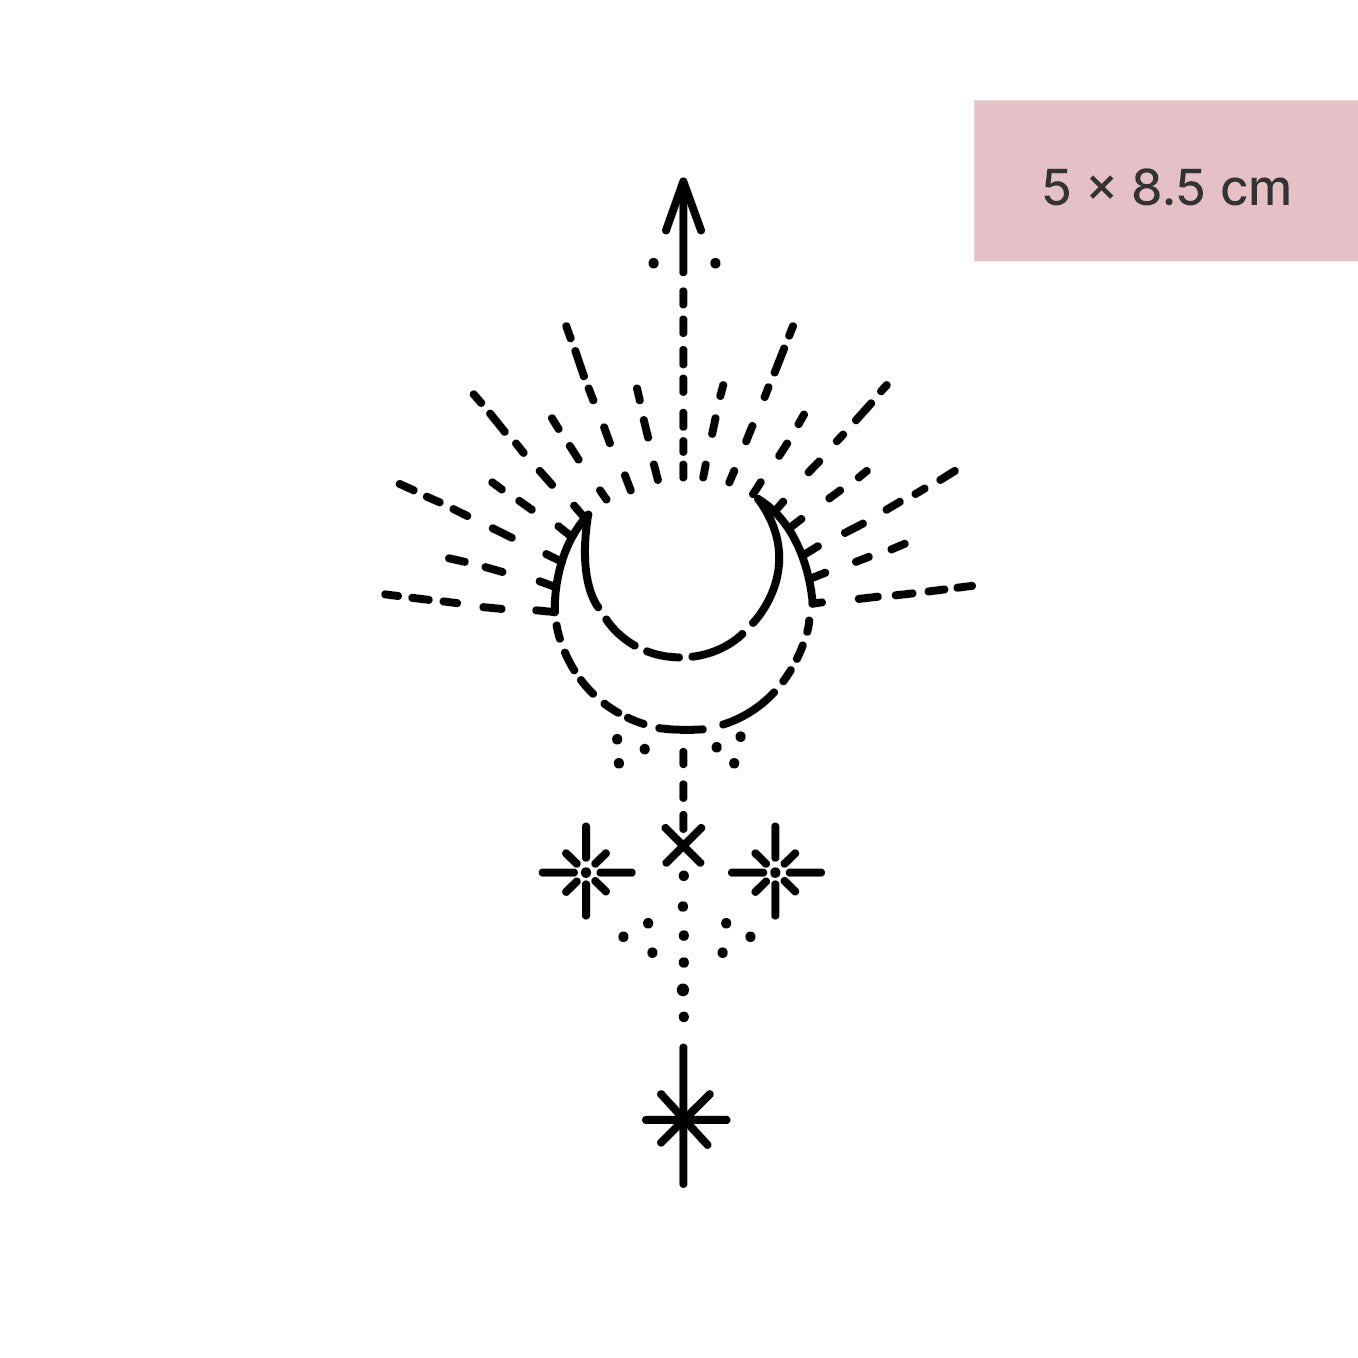 Halbmond, Sonne und Sterne Tattoo von minink, der Marke für temporäre Tattoos.